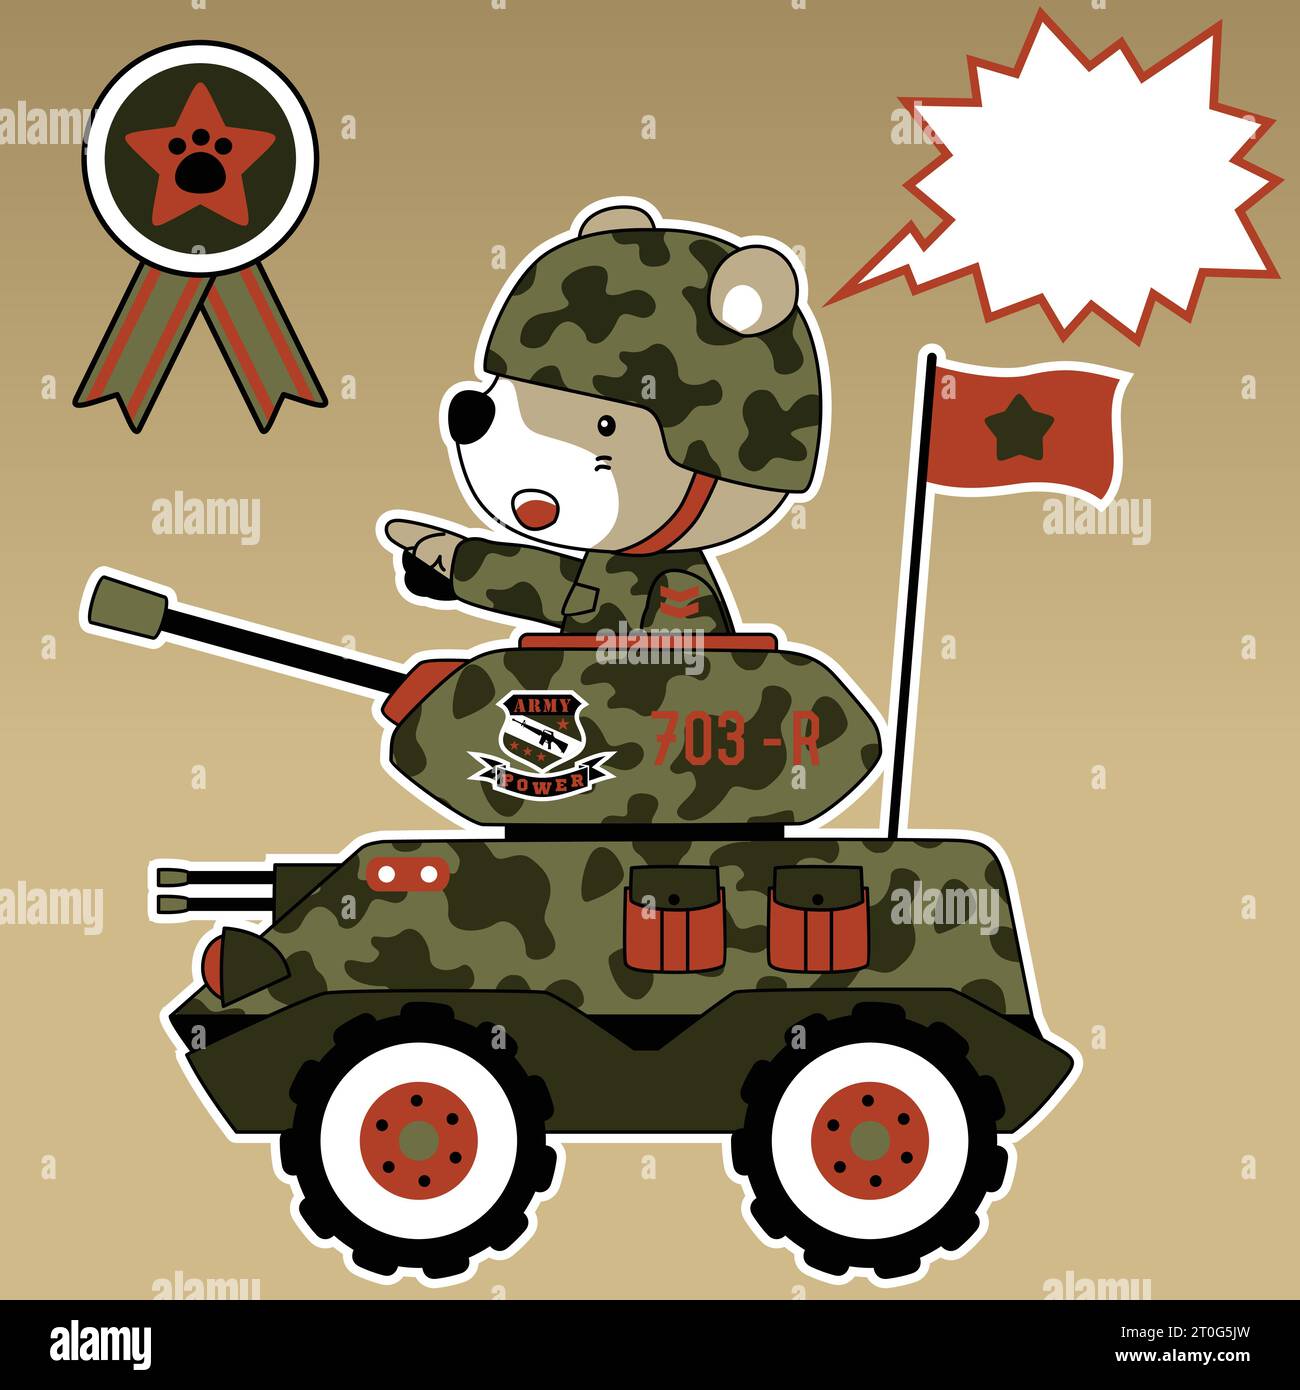 Lustiger Bärensoldat auf gepanzertem Fahrzeug, Vektor-Zeichentrickillustration Stock Vektor